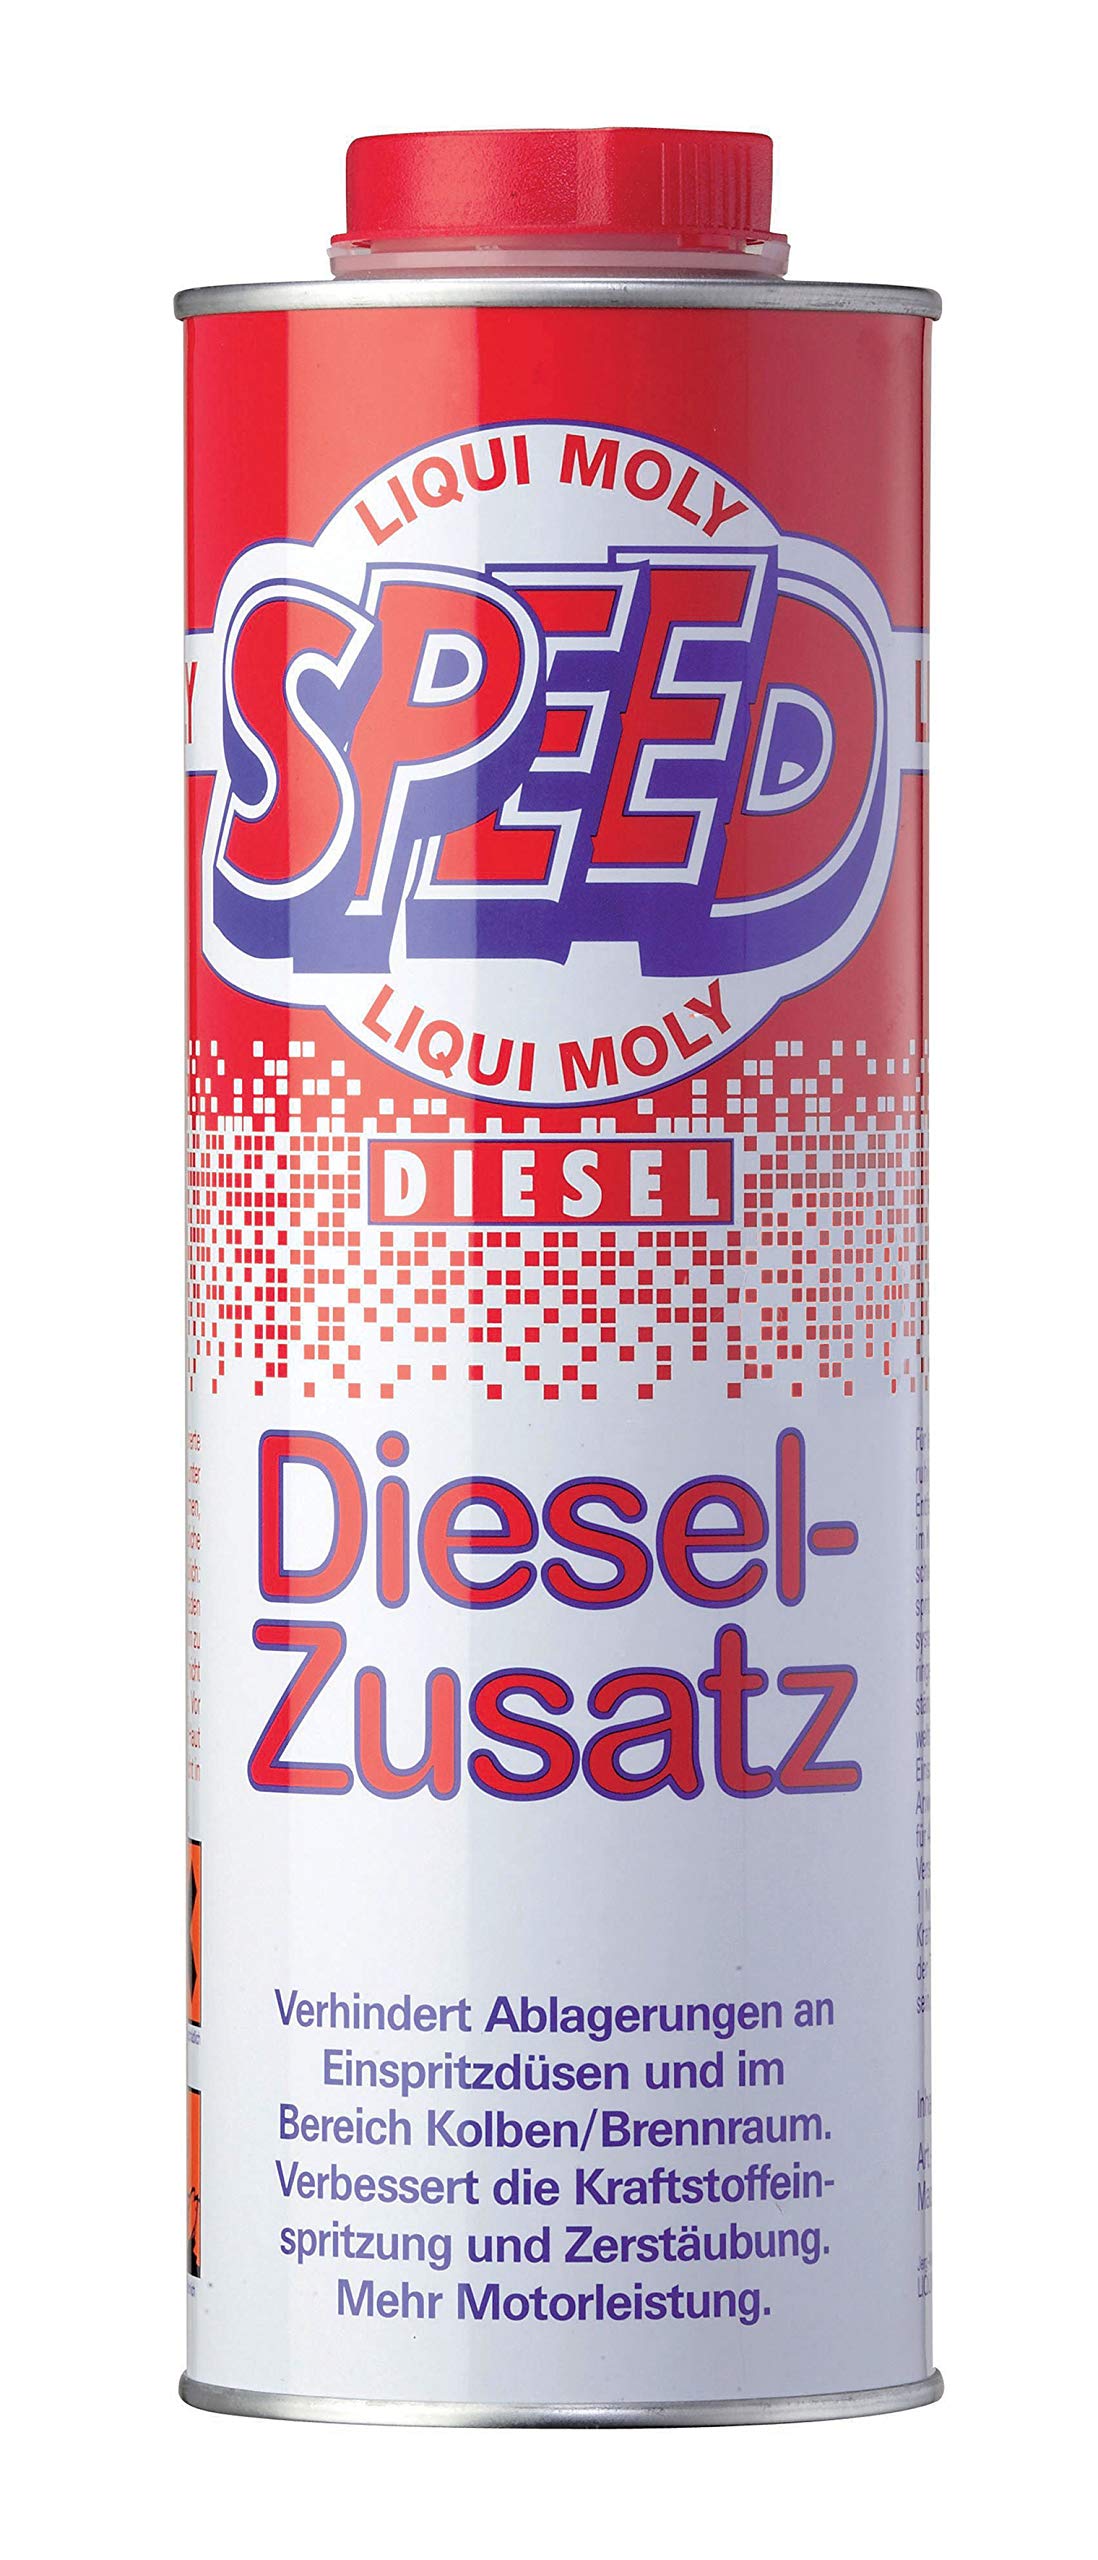 LIQUI MOLY Speed Diesel-Zusatz | 1 L | Dieseladditiv | Art.-Nr.: 5160 von Liqui Moly